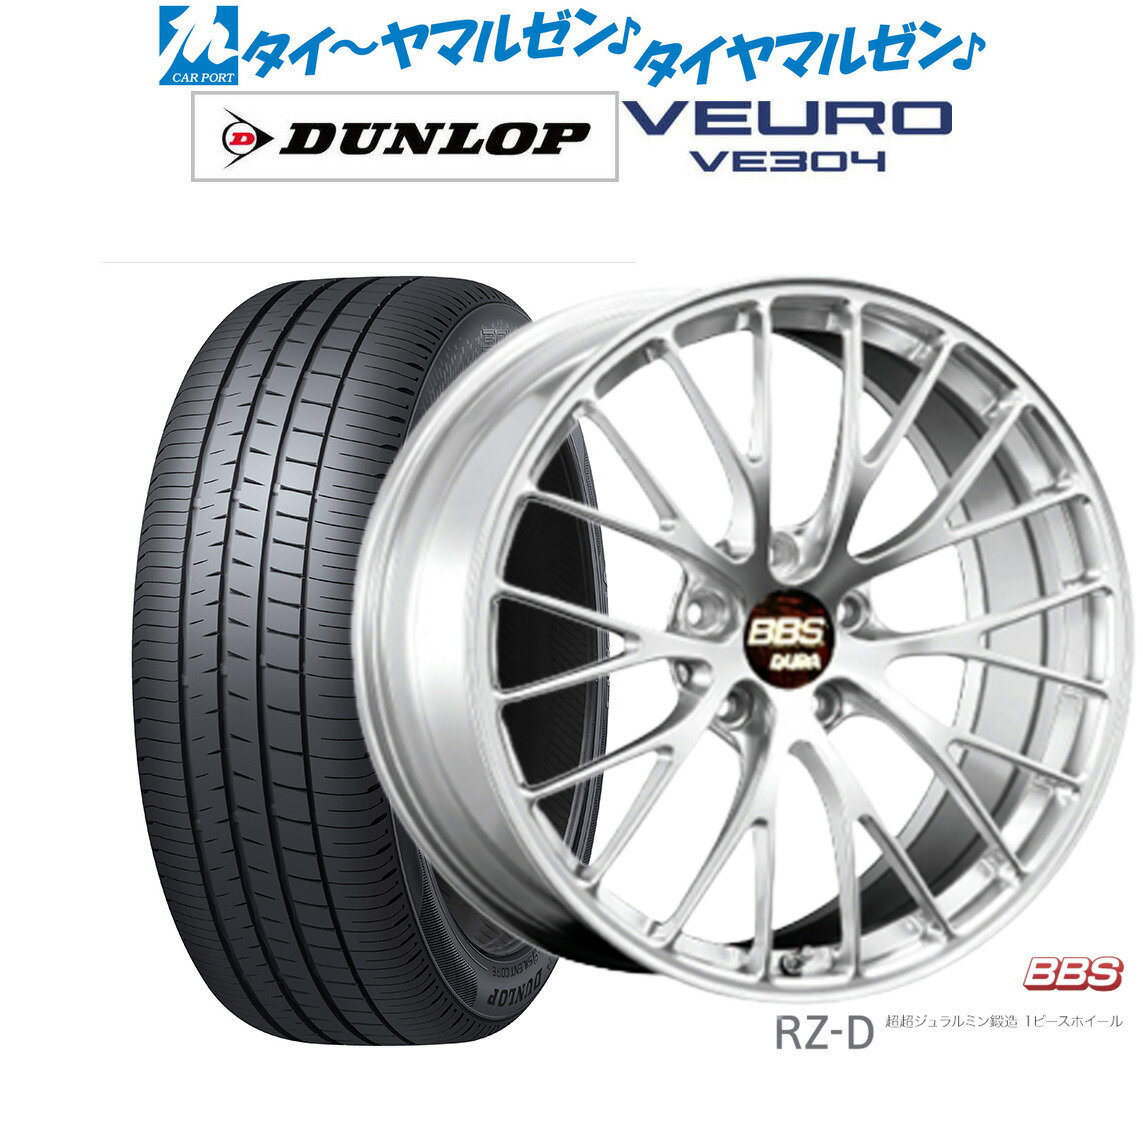 新品 サマータイヤ ホイール4本セットBBS JAPAN RZ-D20インチ 8.5Jダンロップ VEURO ビューロ VE304255/35R20